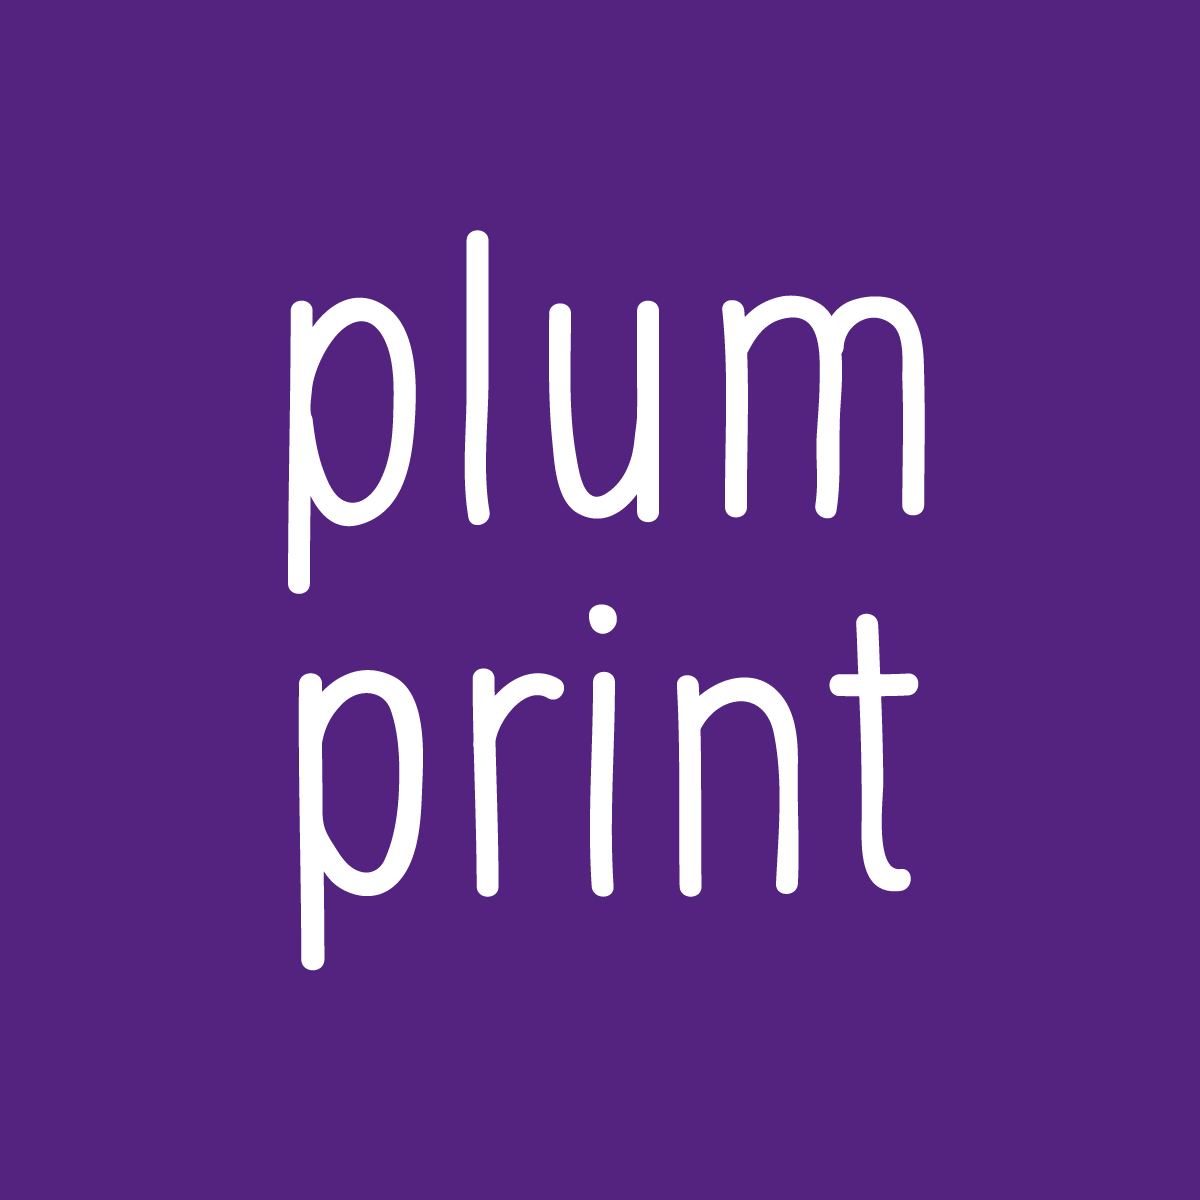 Plum Print